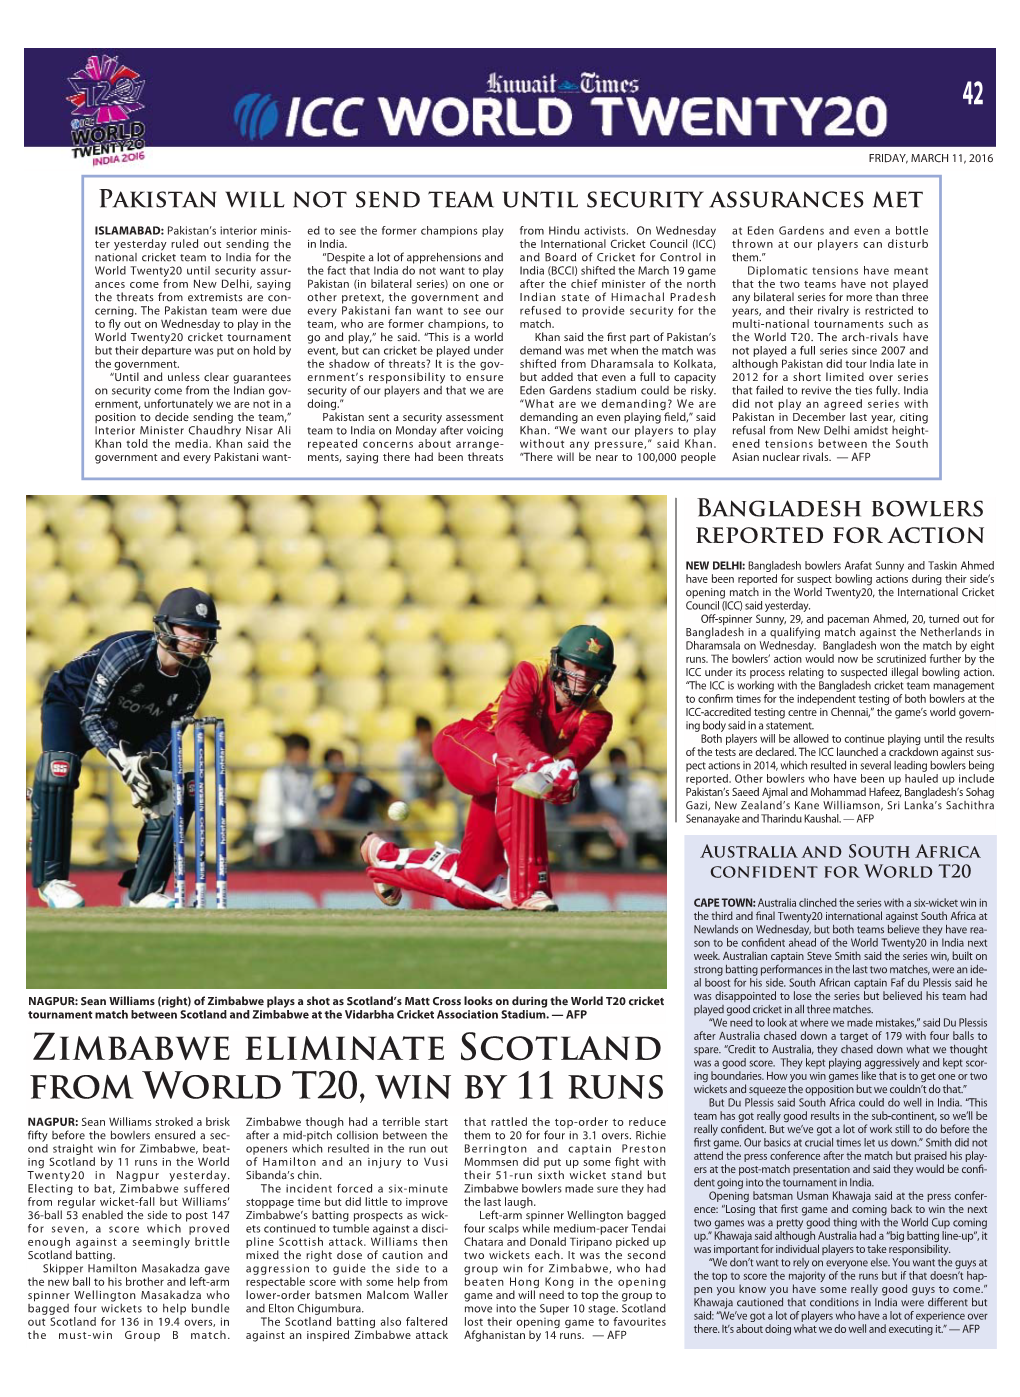 Zimbabwe Eliminate Scotland from World T20, Win by 11 Runs